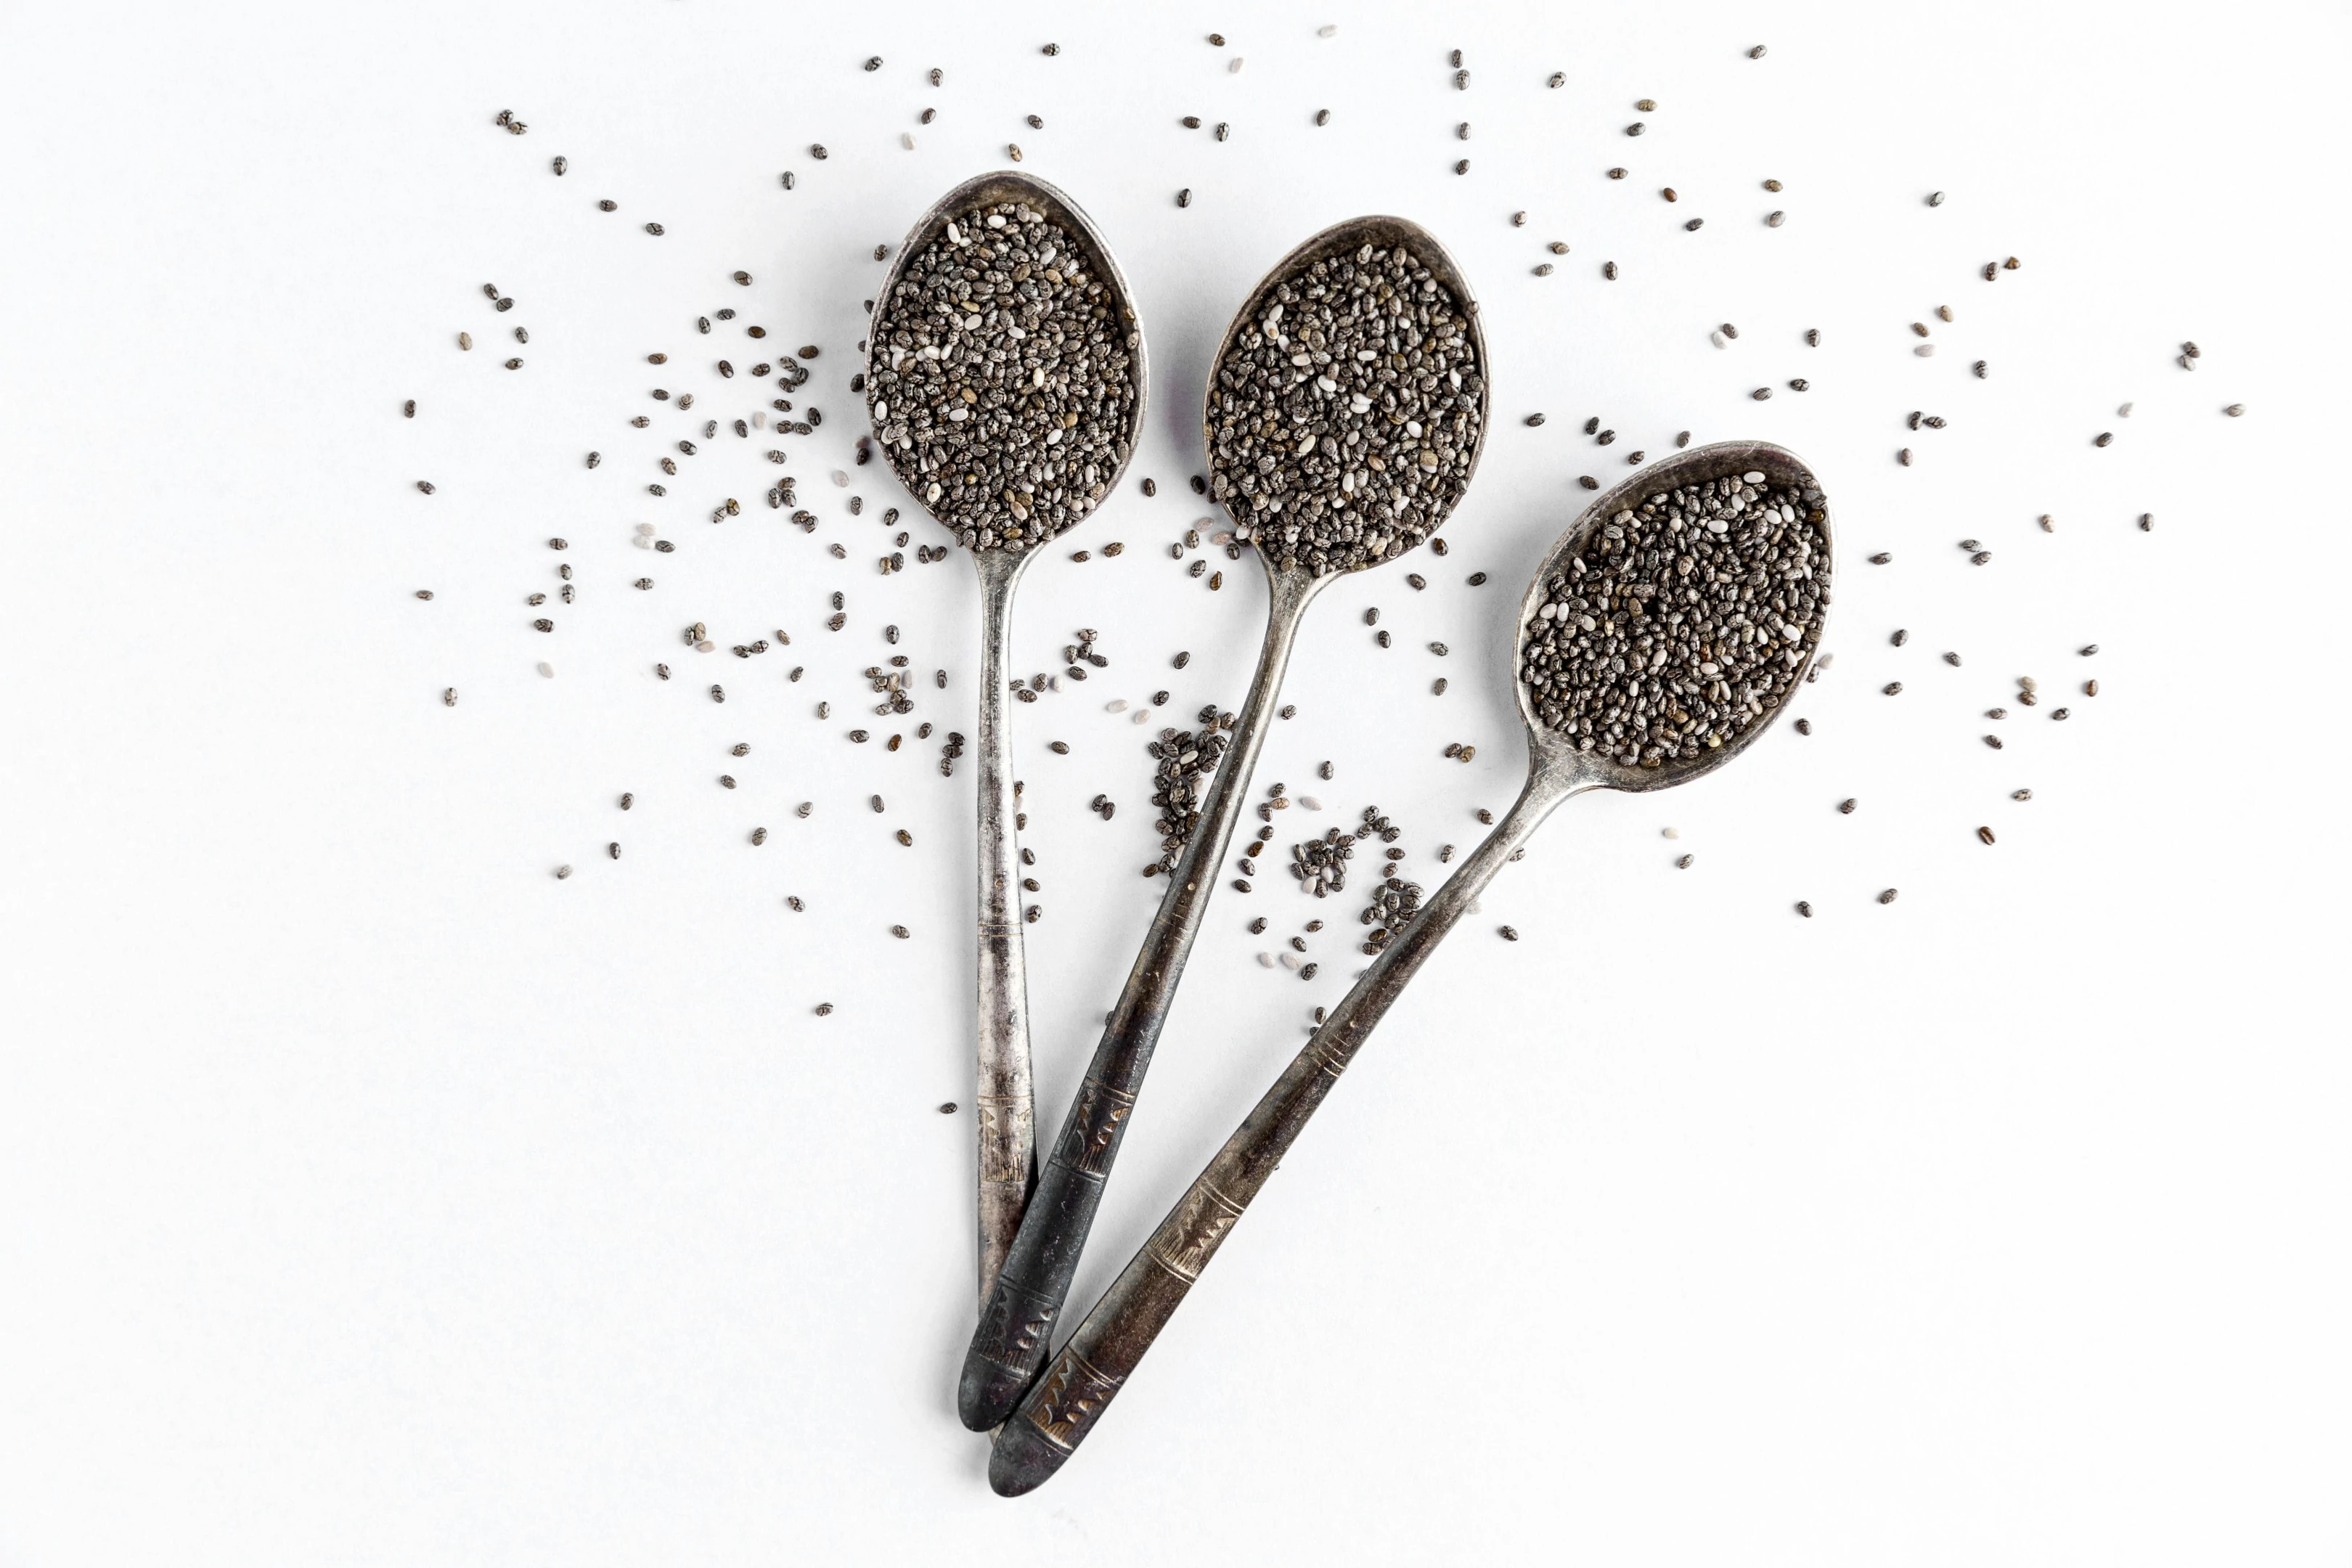 Chia seeds in metal spoons